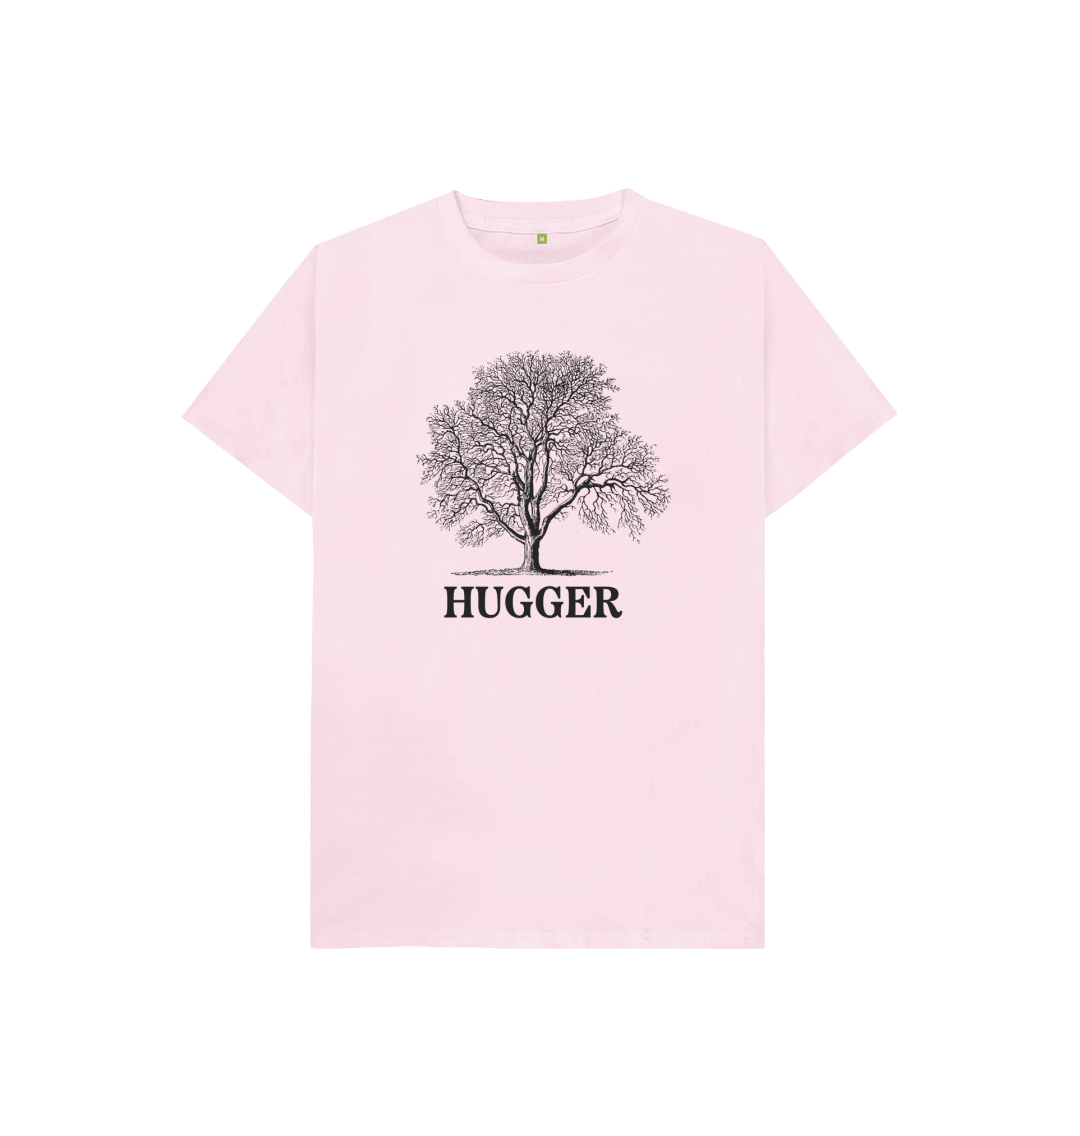 Little Tree Hugger T Shirt - Unique Design & Eco Friendly!